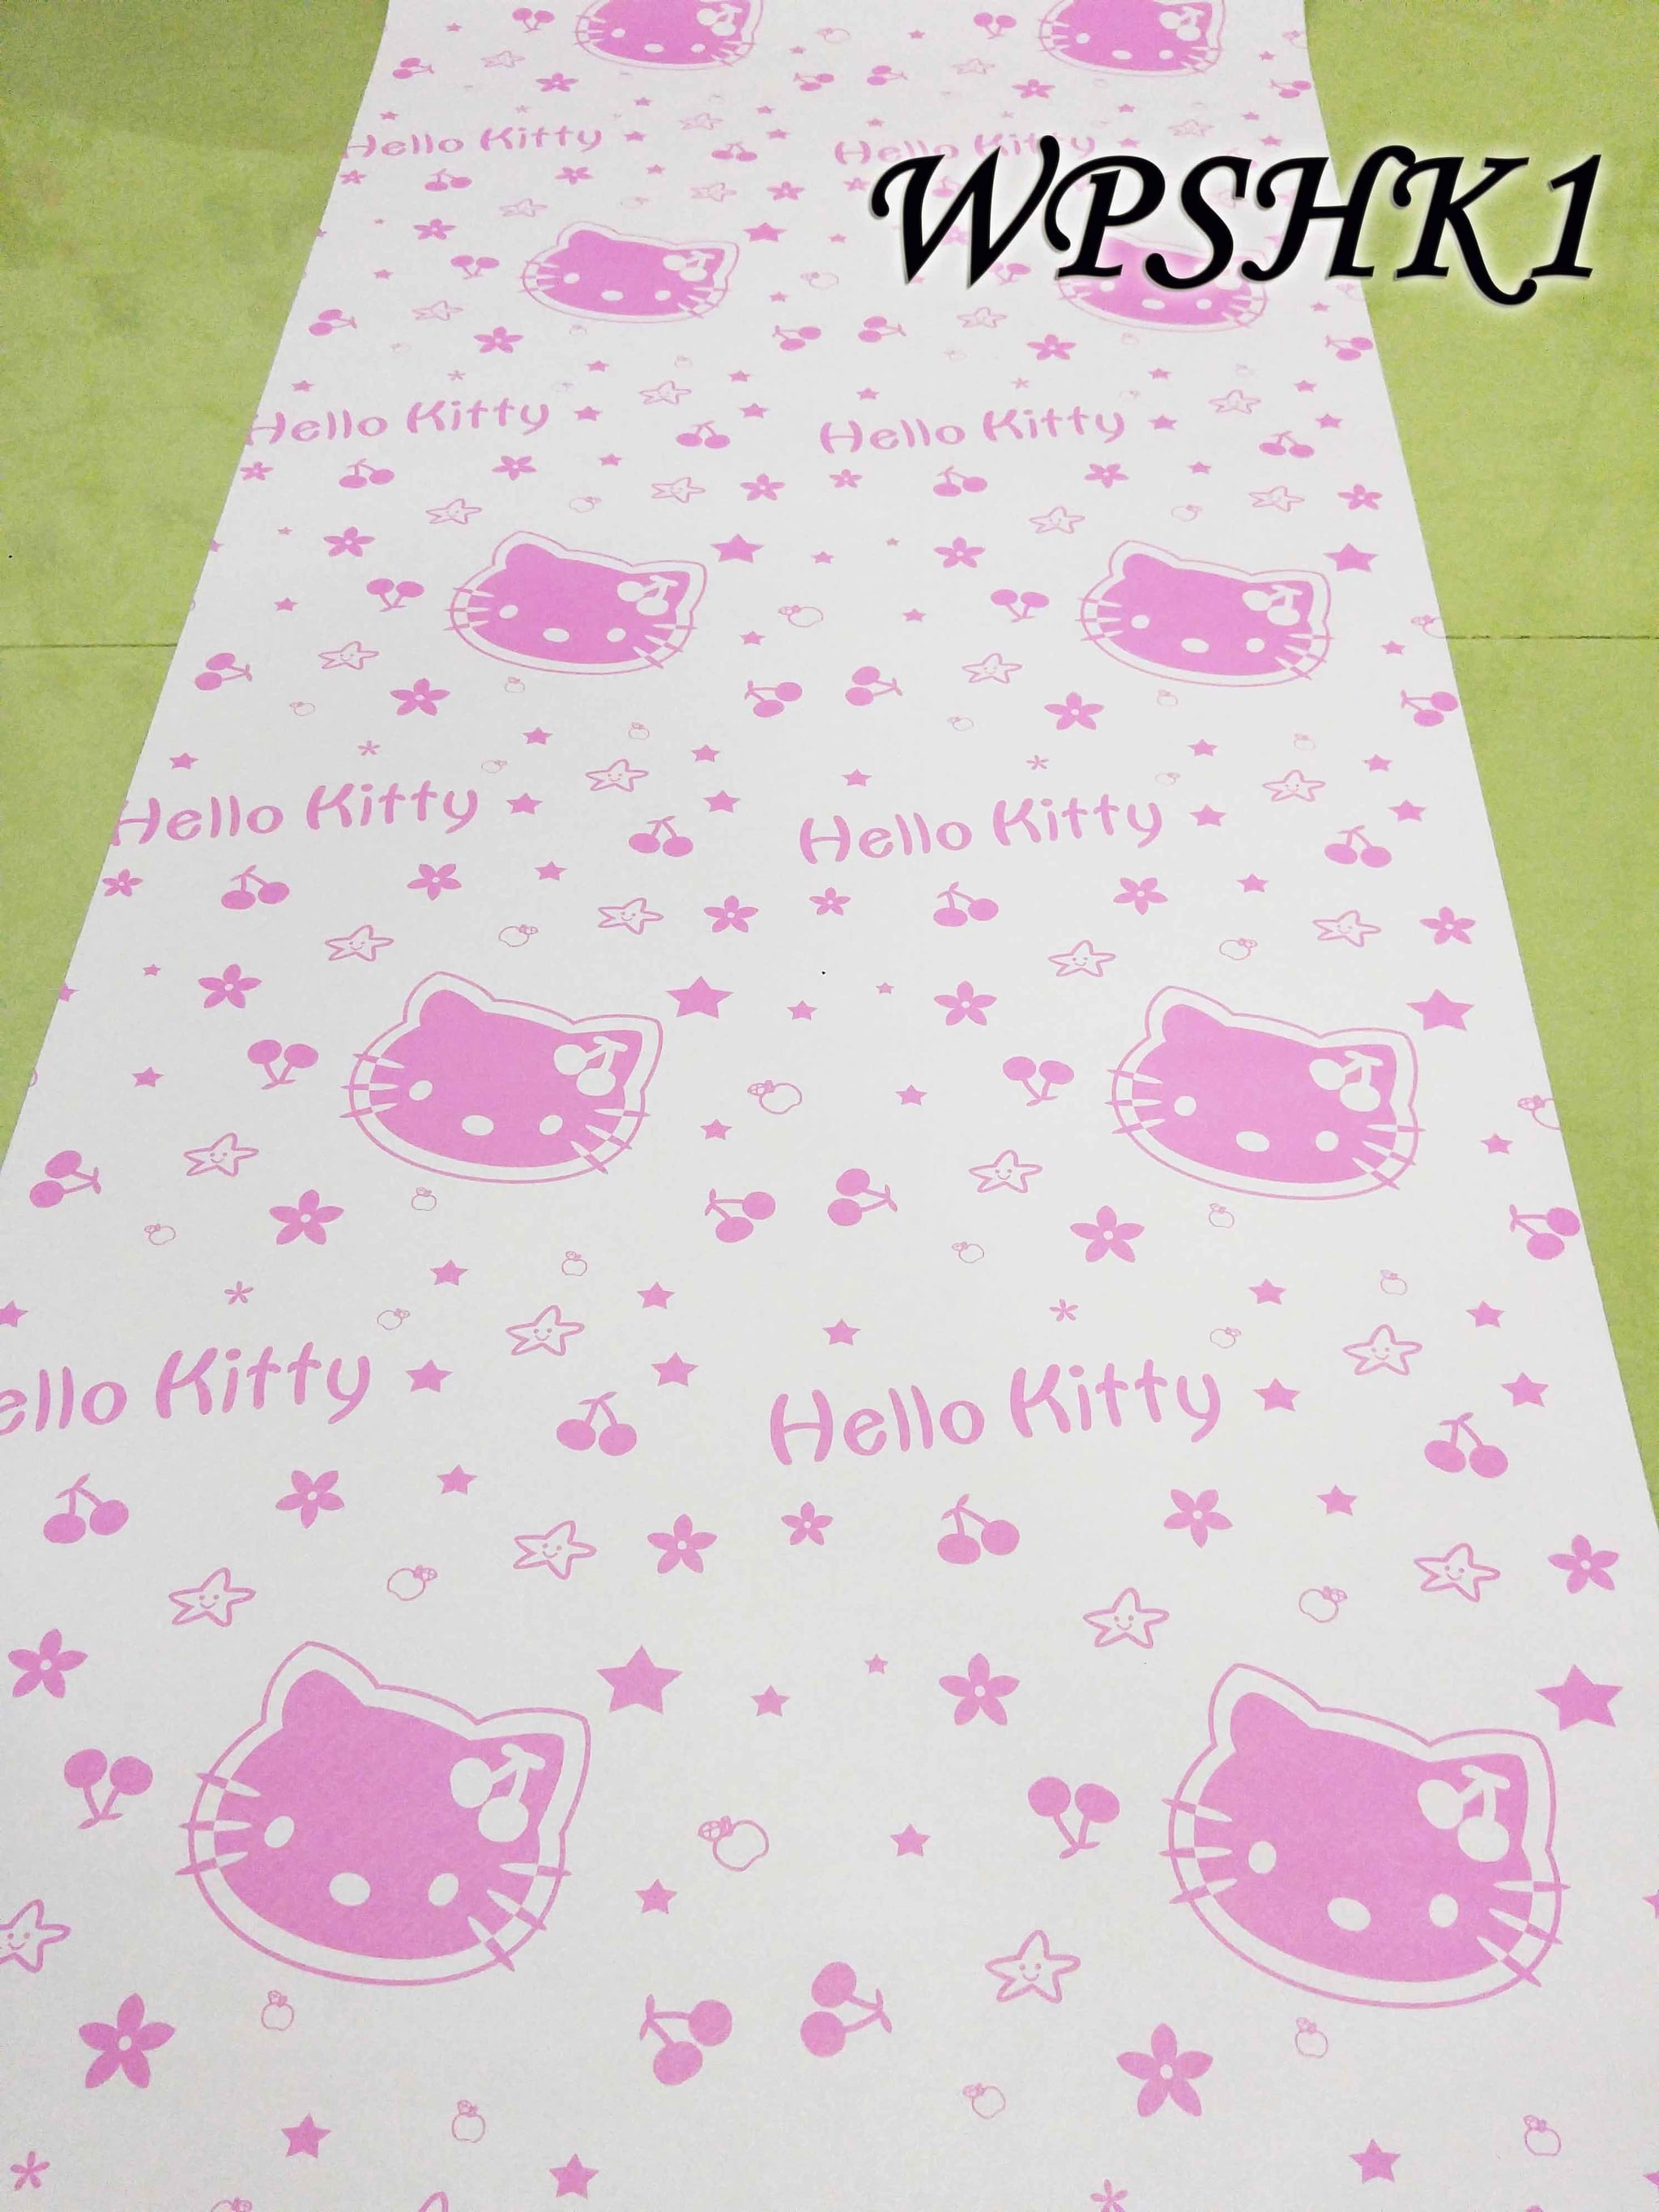 Stok Terbaru Wallpaper Sticker 45cmx5m Wpshk1 Pink - Quilt , HD Wallpaper & Backgrounds